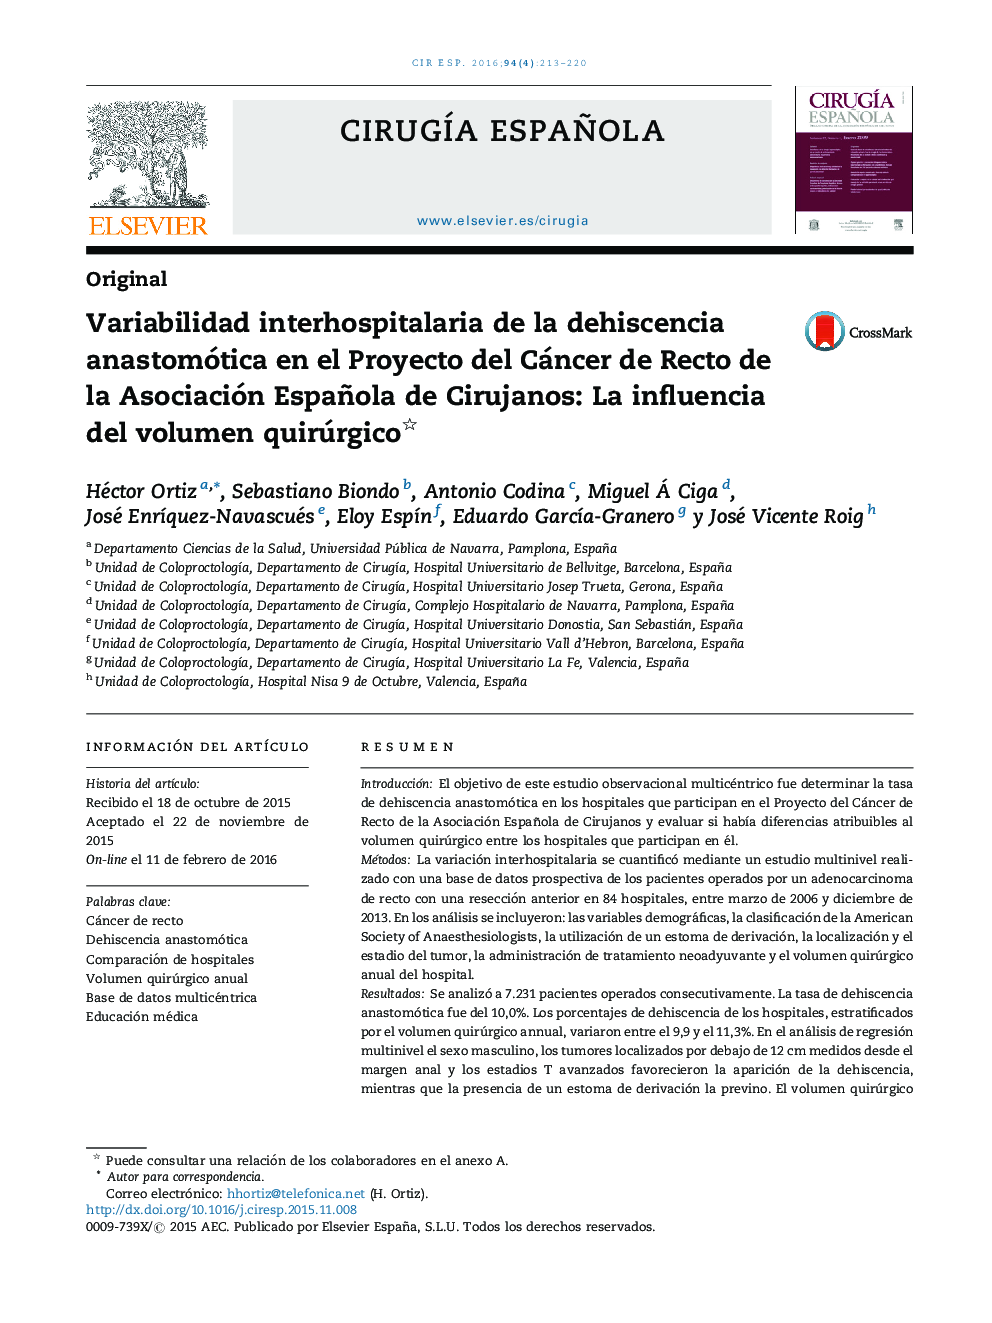 Variabilidad interhospitalaria de la dehiscencia anastomótica en el Proyecto del Cáncer de Recto de la Asociación Española de Cirujanos: La influencia del volumen quirúrgico 